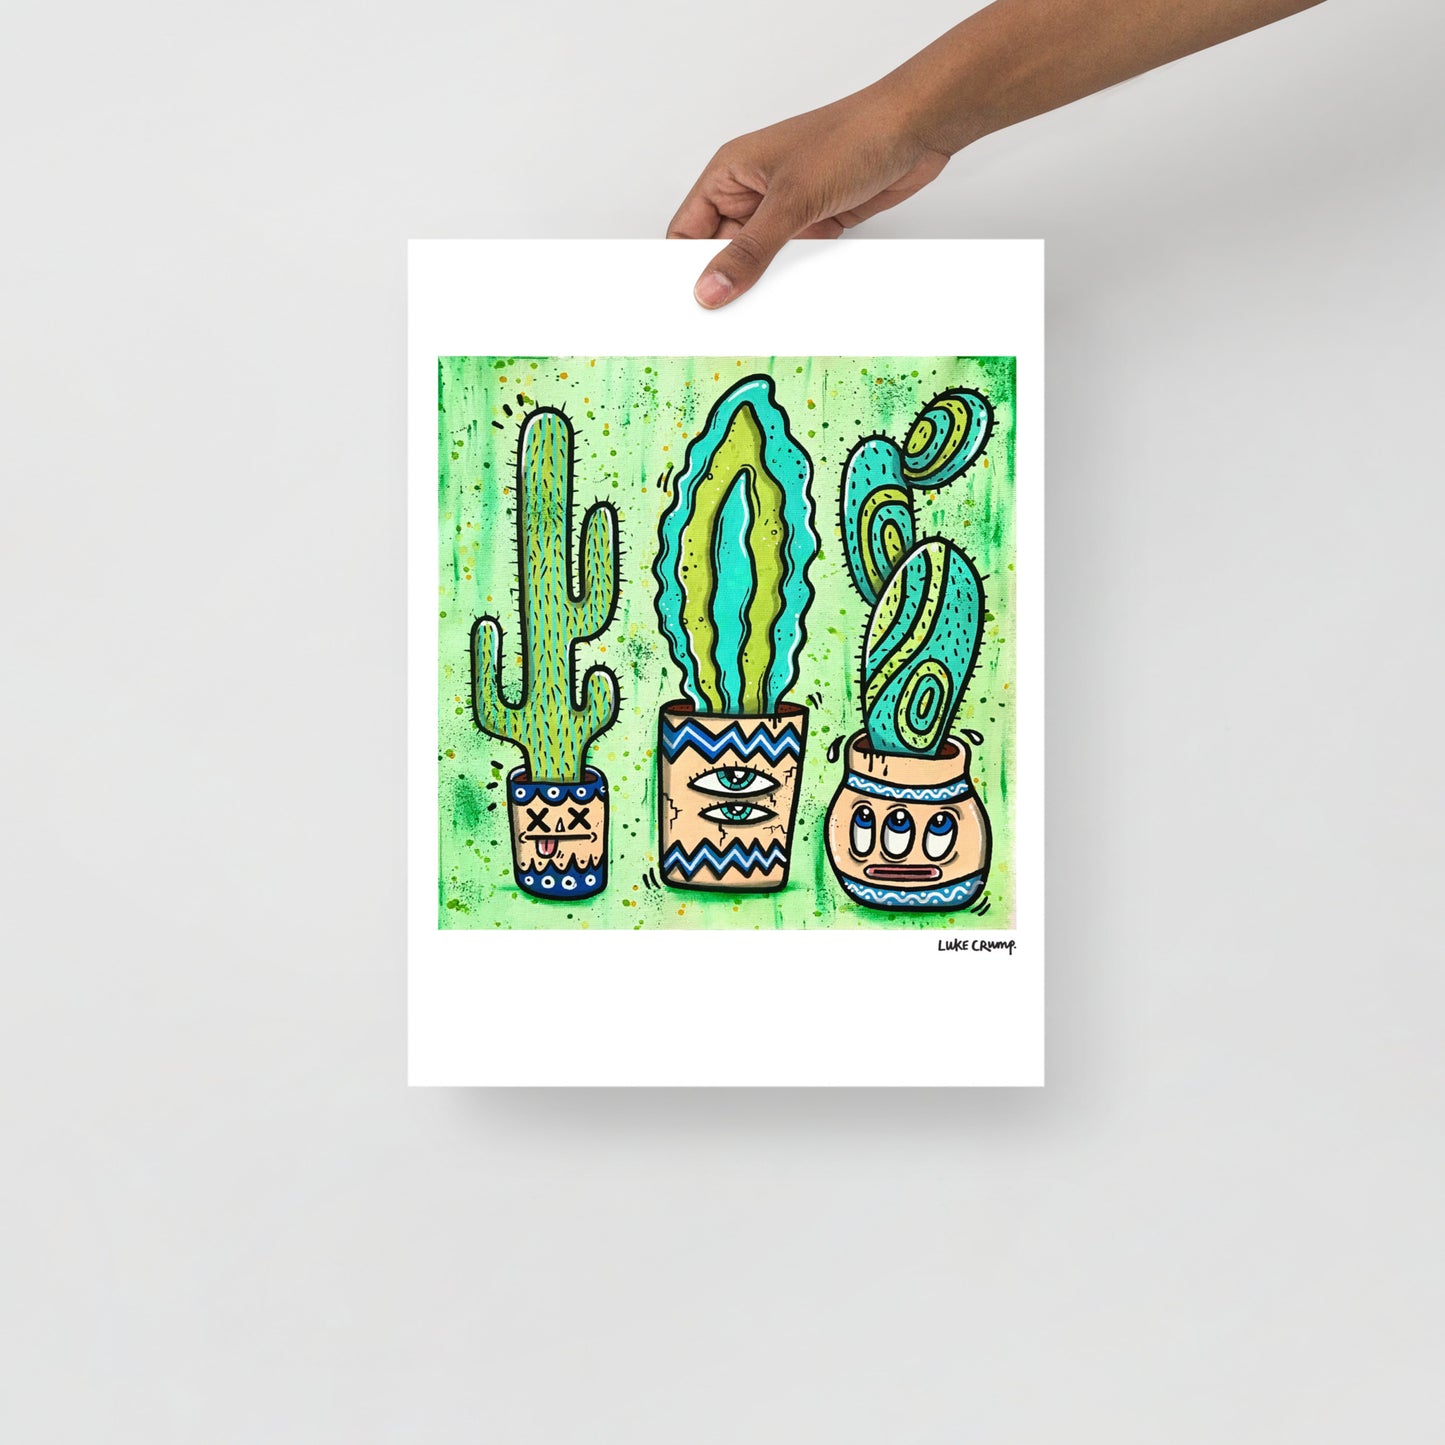 '3 Cacti' Print